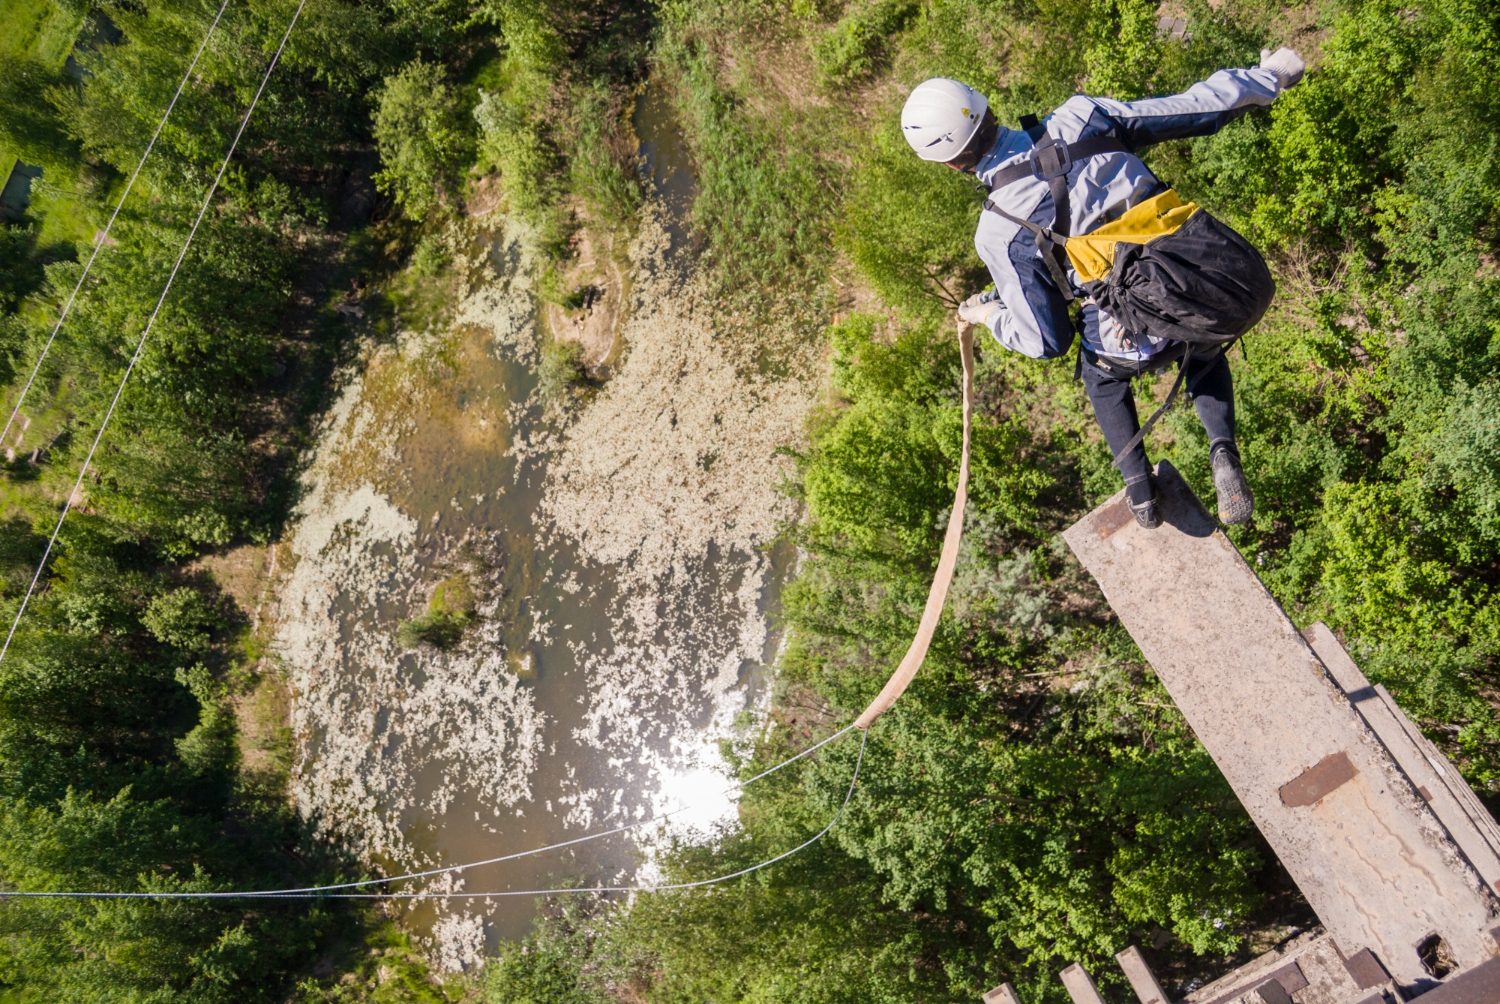 Dream Jump na 40 metrów we Wrocławiu – skorzystaj z nietypowej atrakcji!